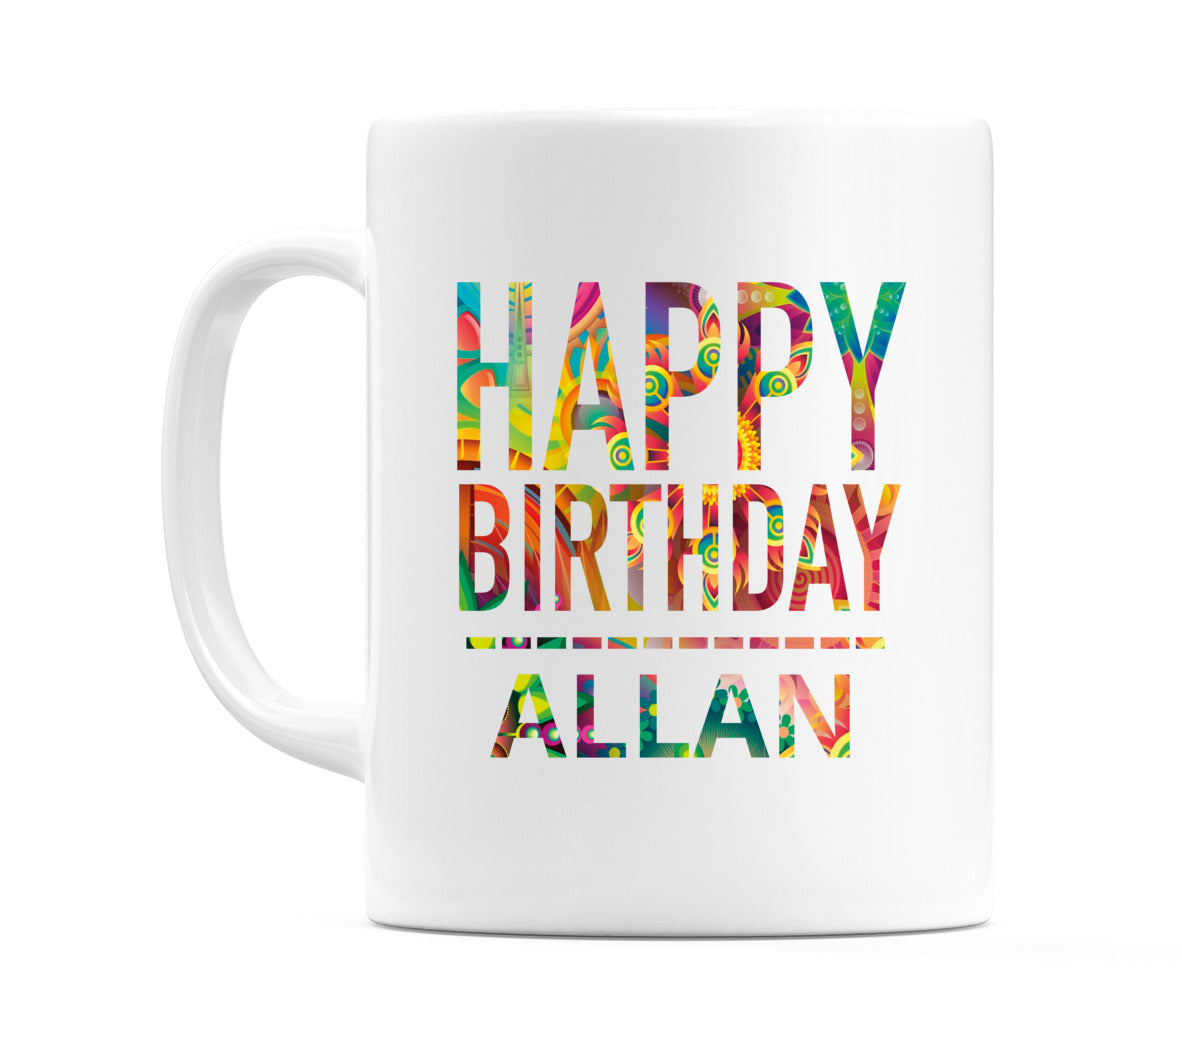 Happy Birthday Allan (Tie Dye Effect) Mug Cup by WeDoMugs